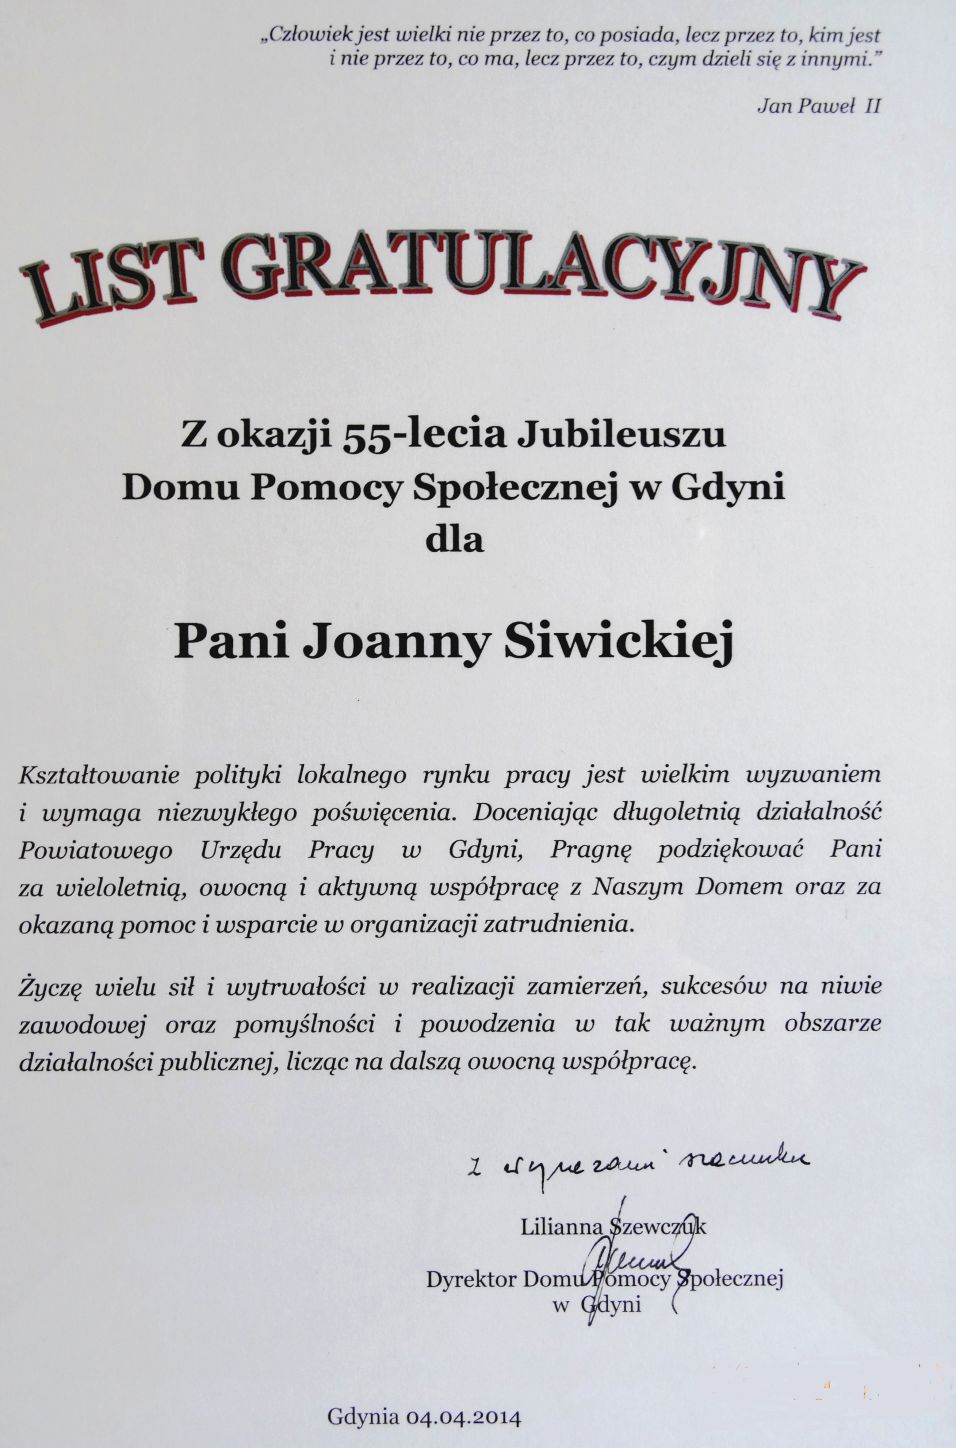 List Gratulacyjny z okazji 55-lecia Jubileuszu Domu Pomocy Społecznej w Gdyni